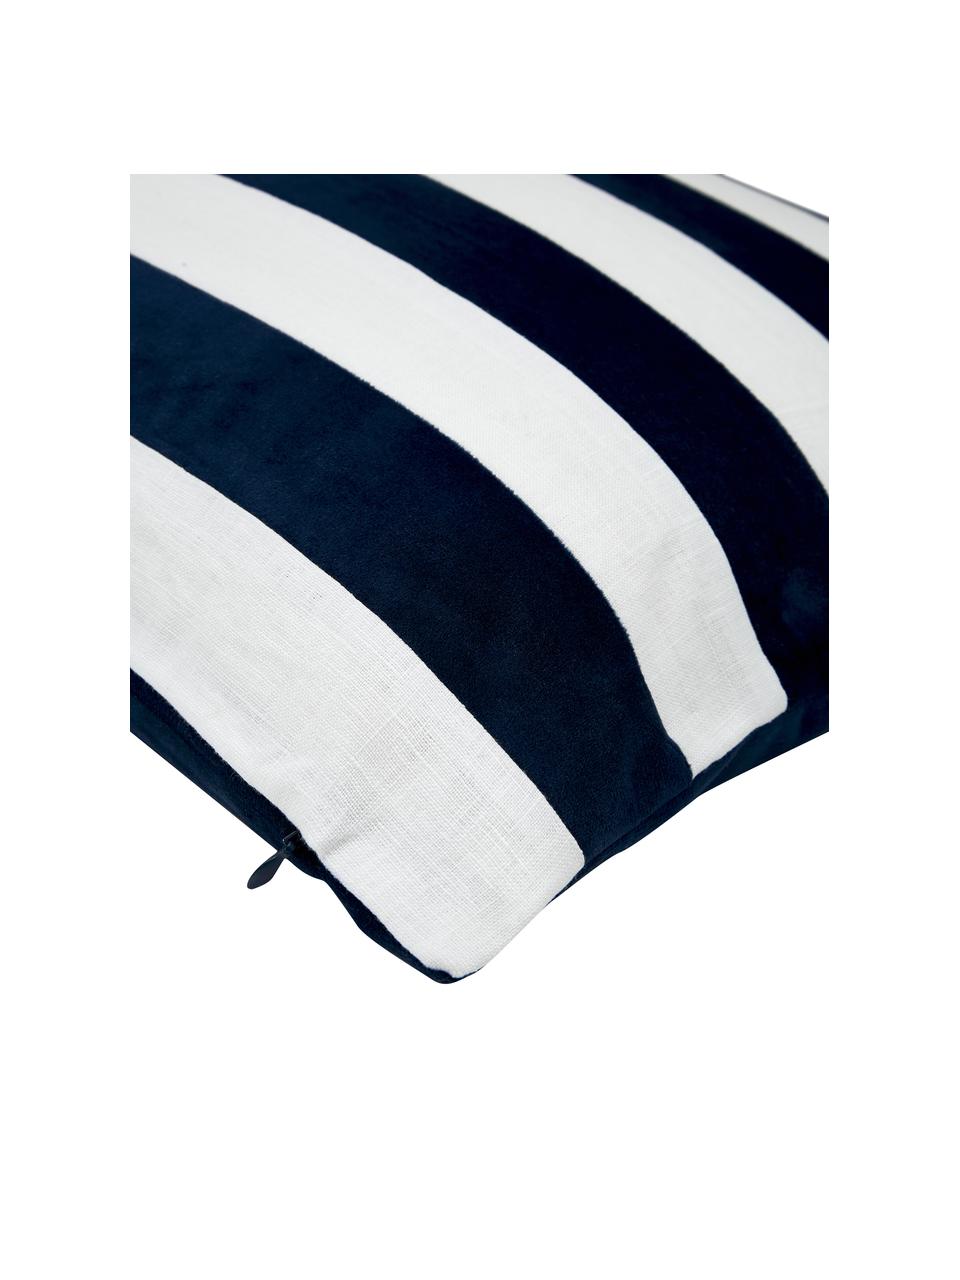 Kussenhoes Maui gemaakt van een fluweel-linnen mix in donkerblauw/wit, Donkerblauw, wit, B 30 x L 50 cm